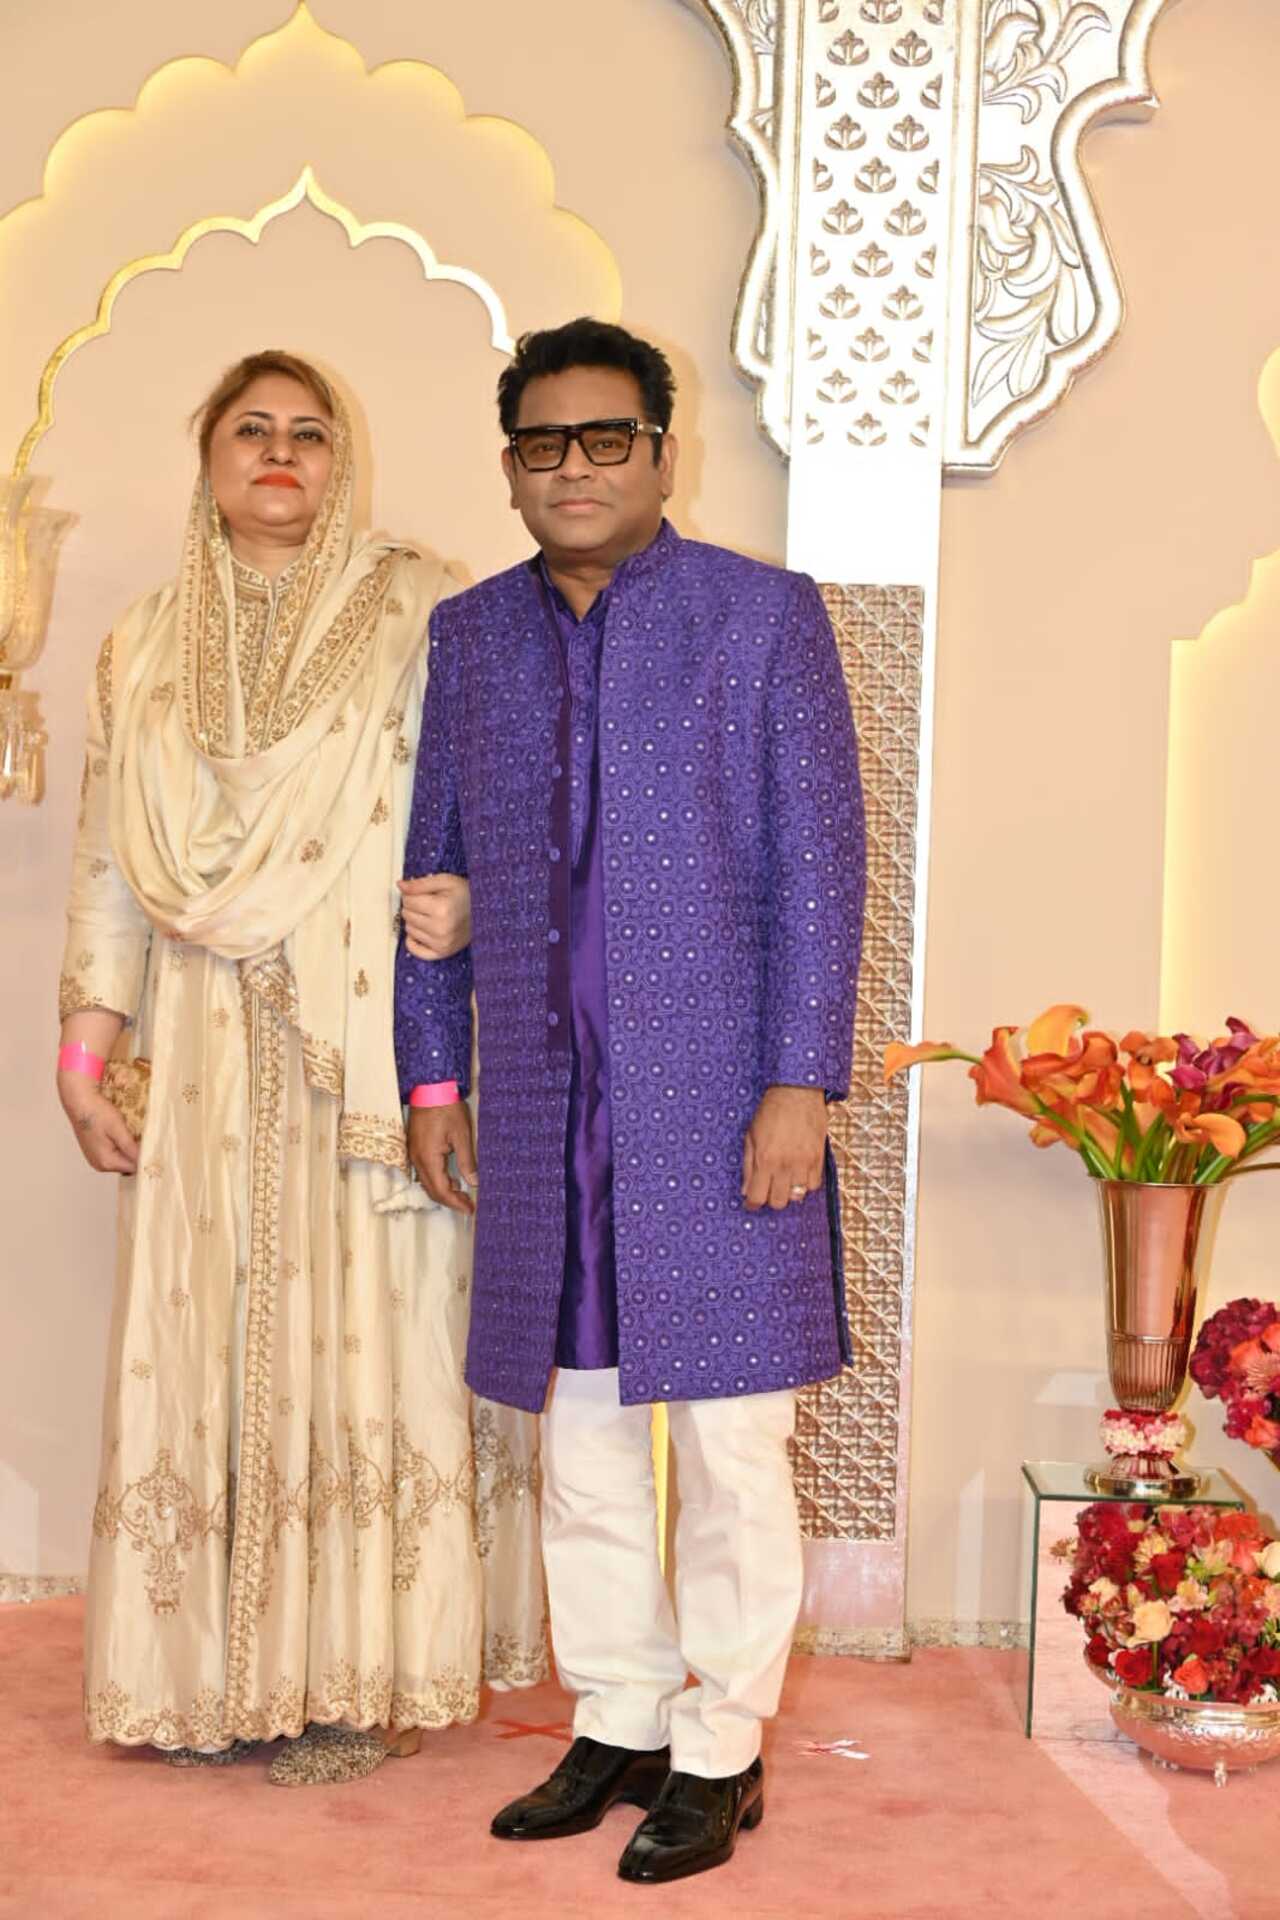 AR Rahman with his wife